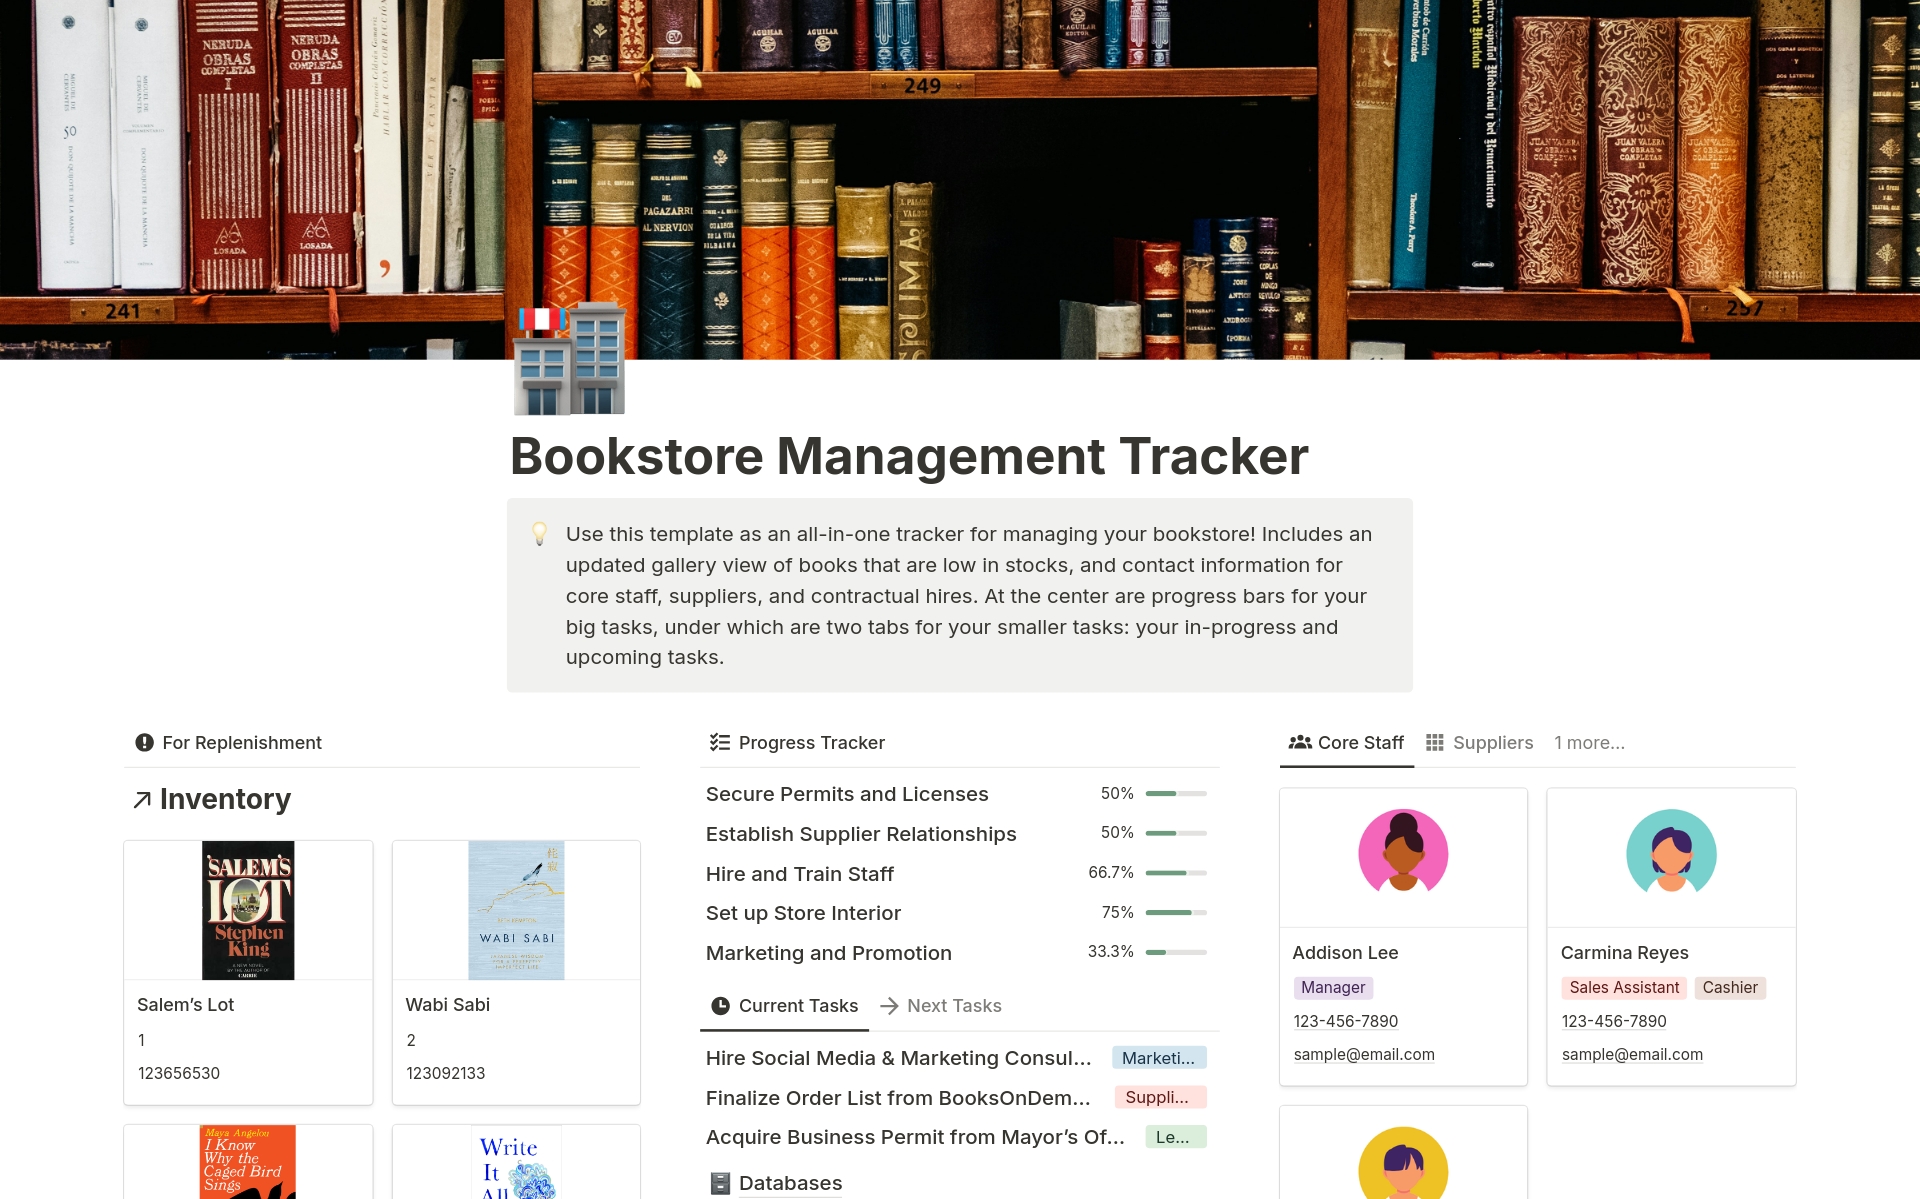 Uma prévia do modelo para Bookstore Management Tracker